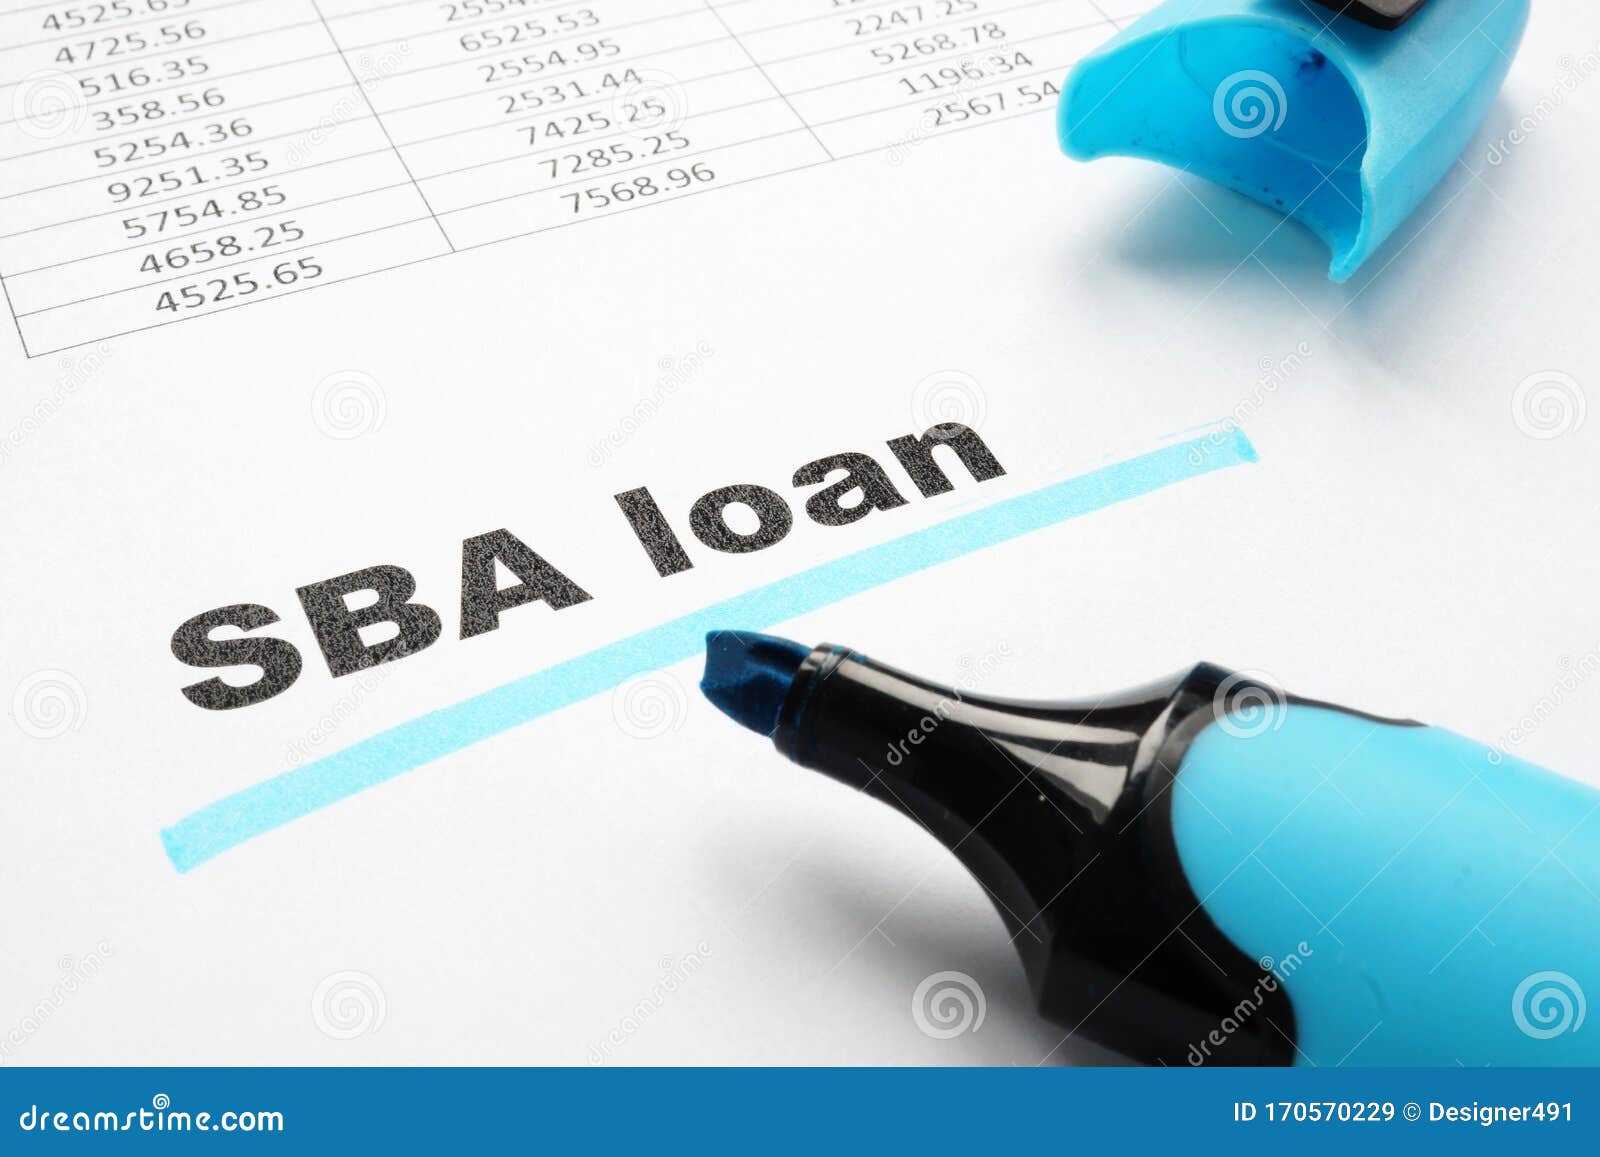 sba loan underlined words and marker